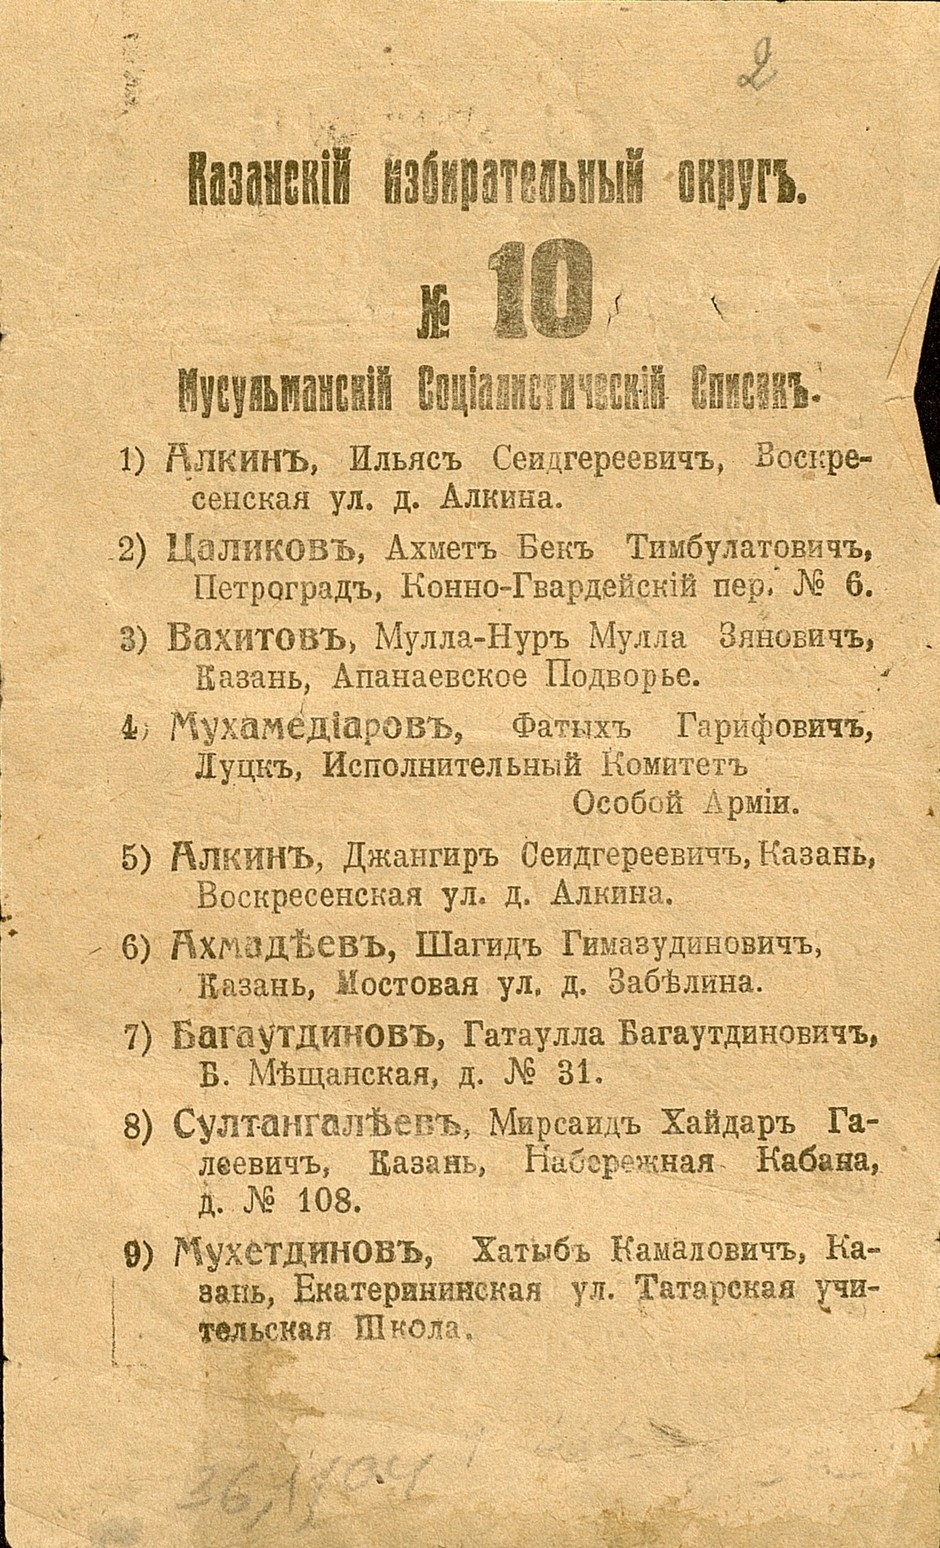 Бюллетени по выборам в Учредительное собрание. 1917 г.